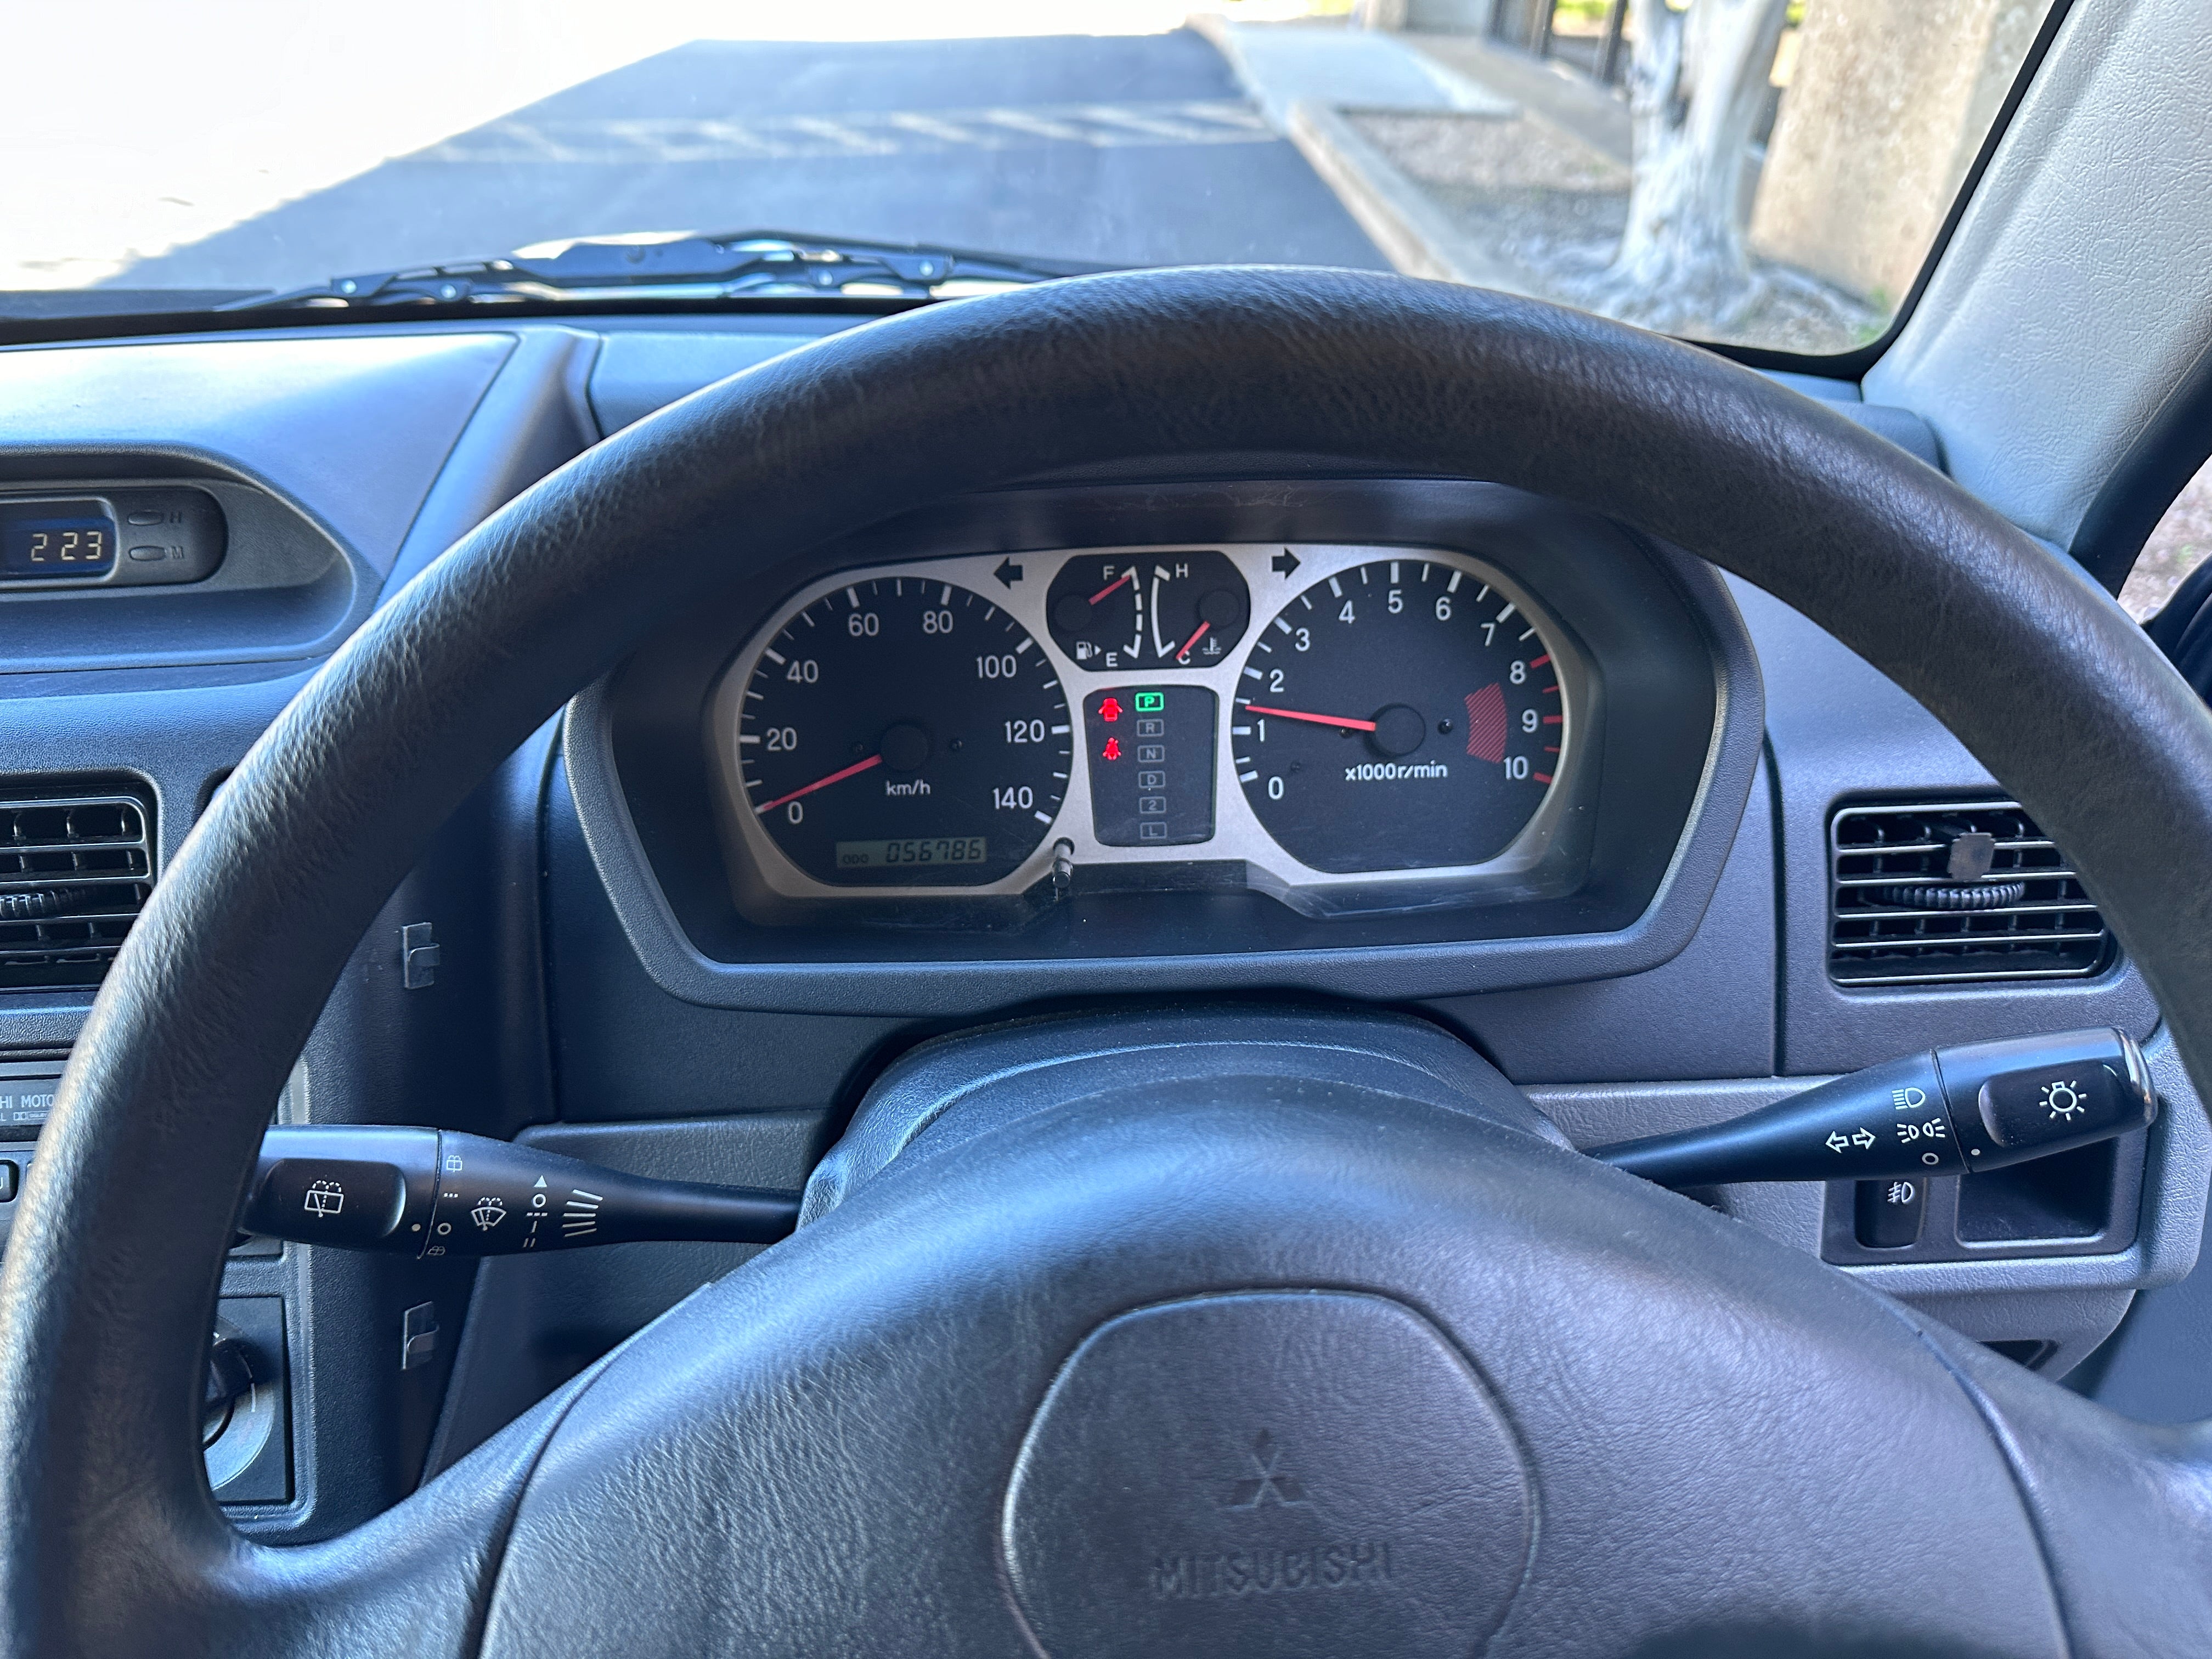 1998 Mitsubishi Pajero Mini Turbo